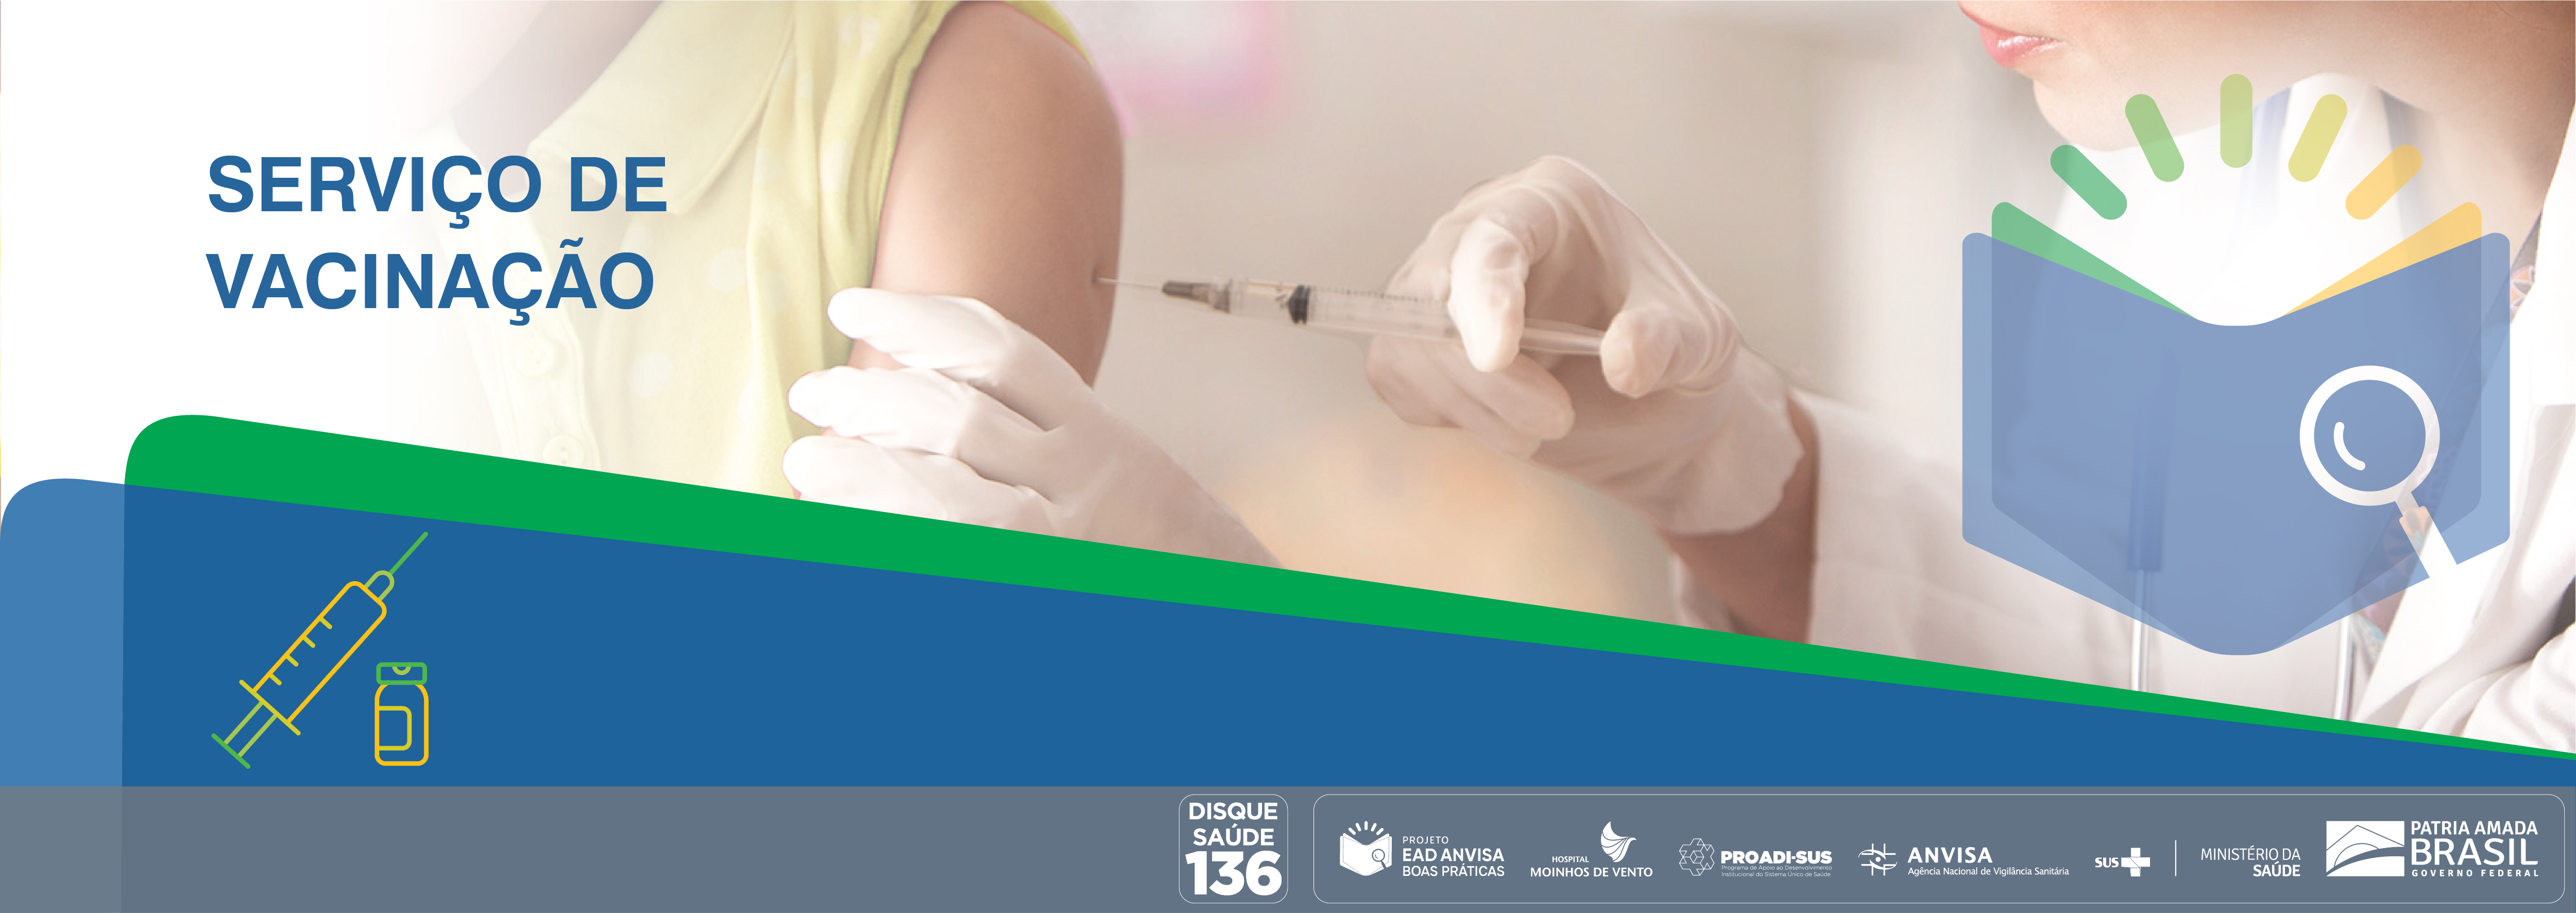 Boas Práticas em Serviços de Vacinação no Brasil ANVISA_BPSVB_2020_V2